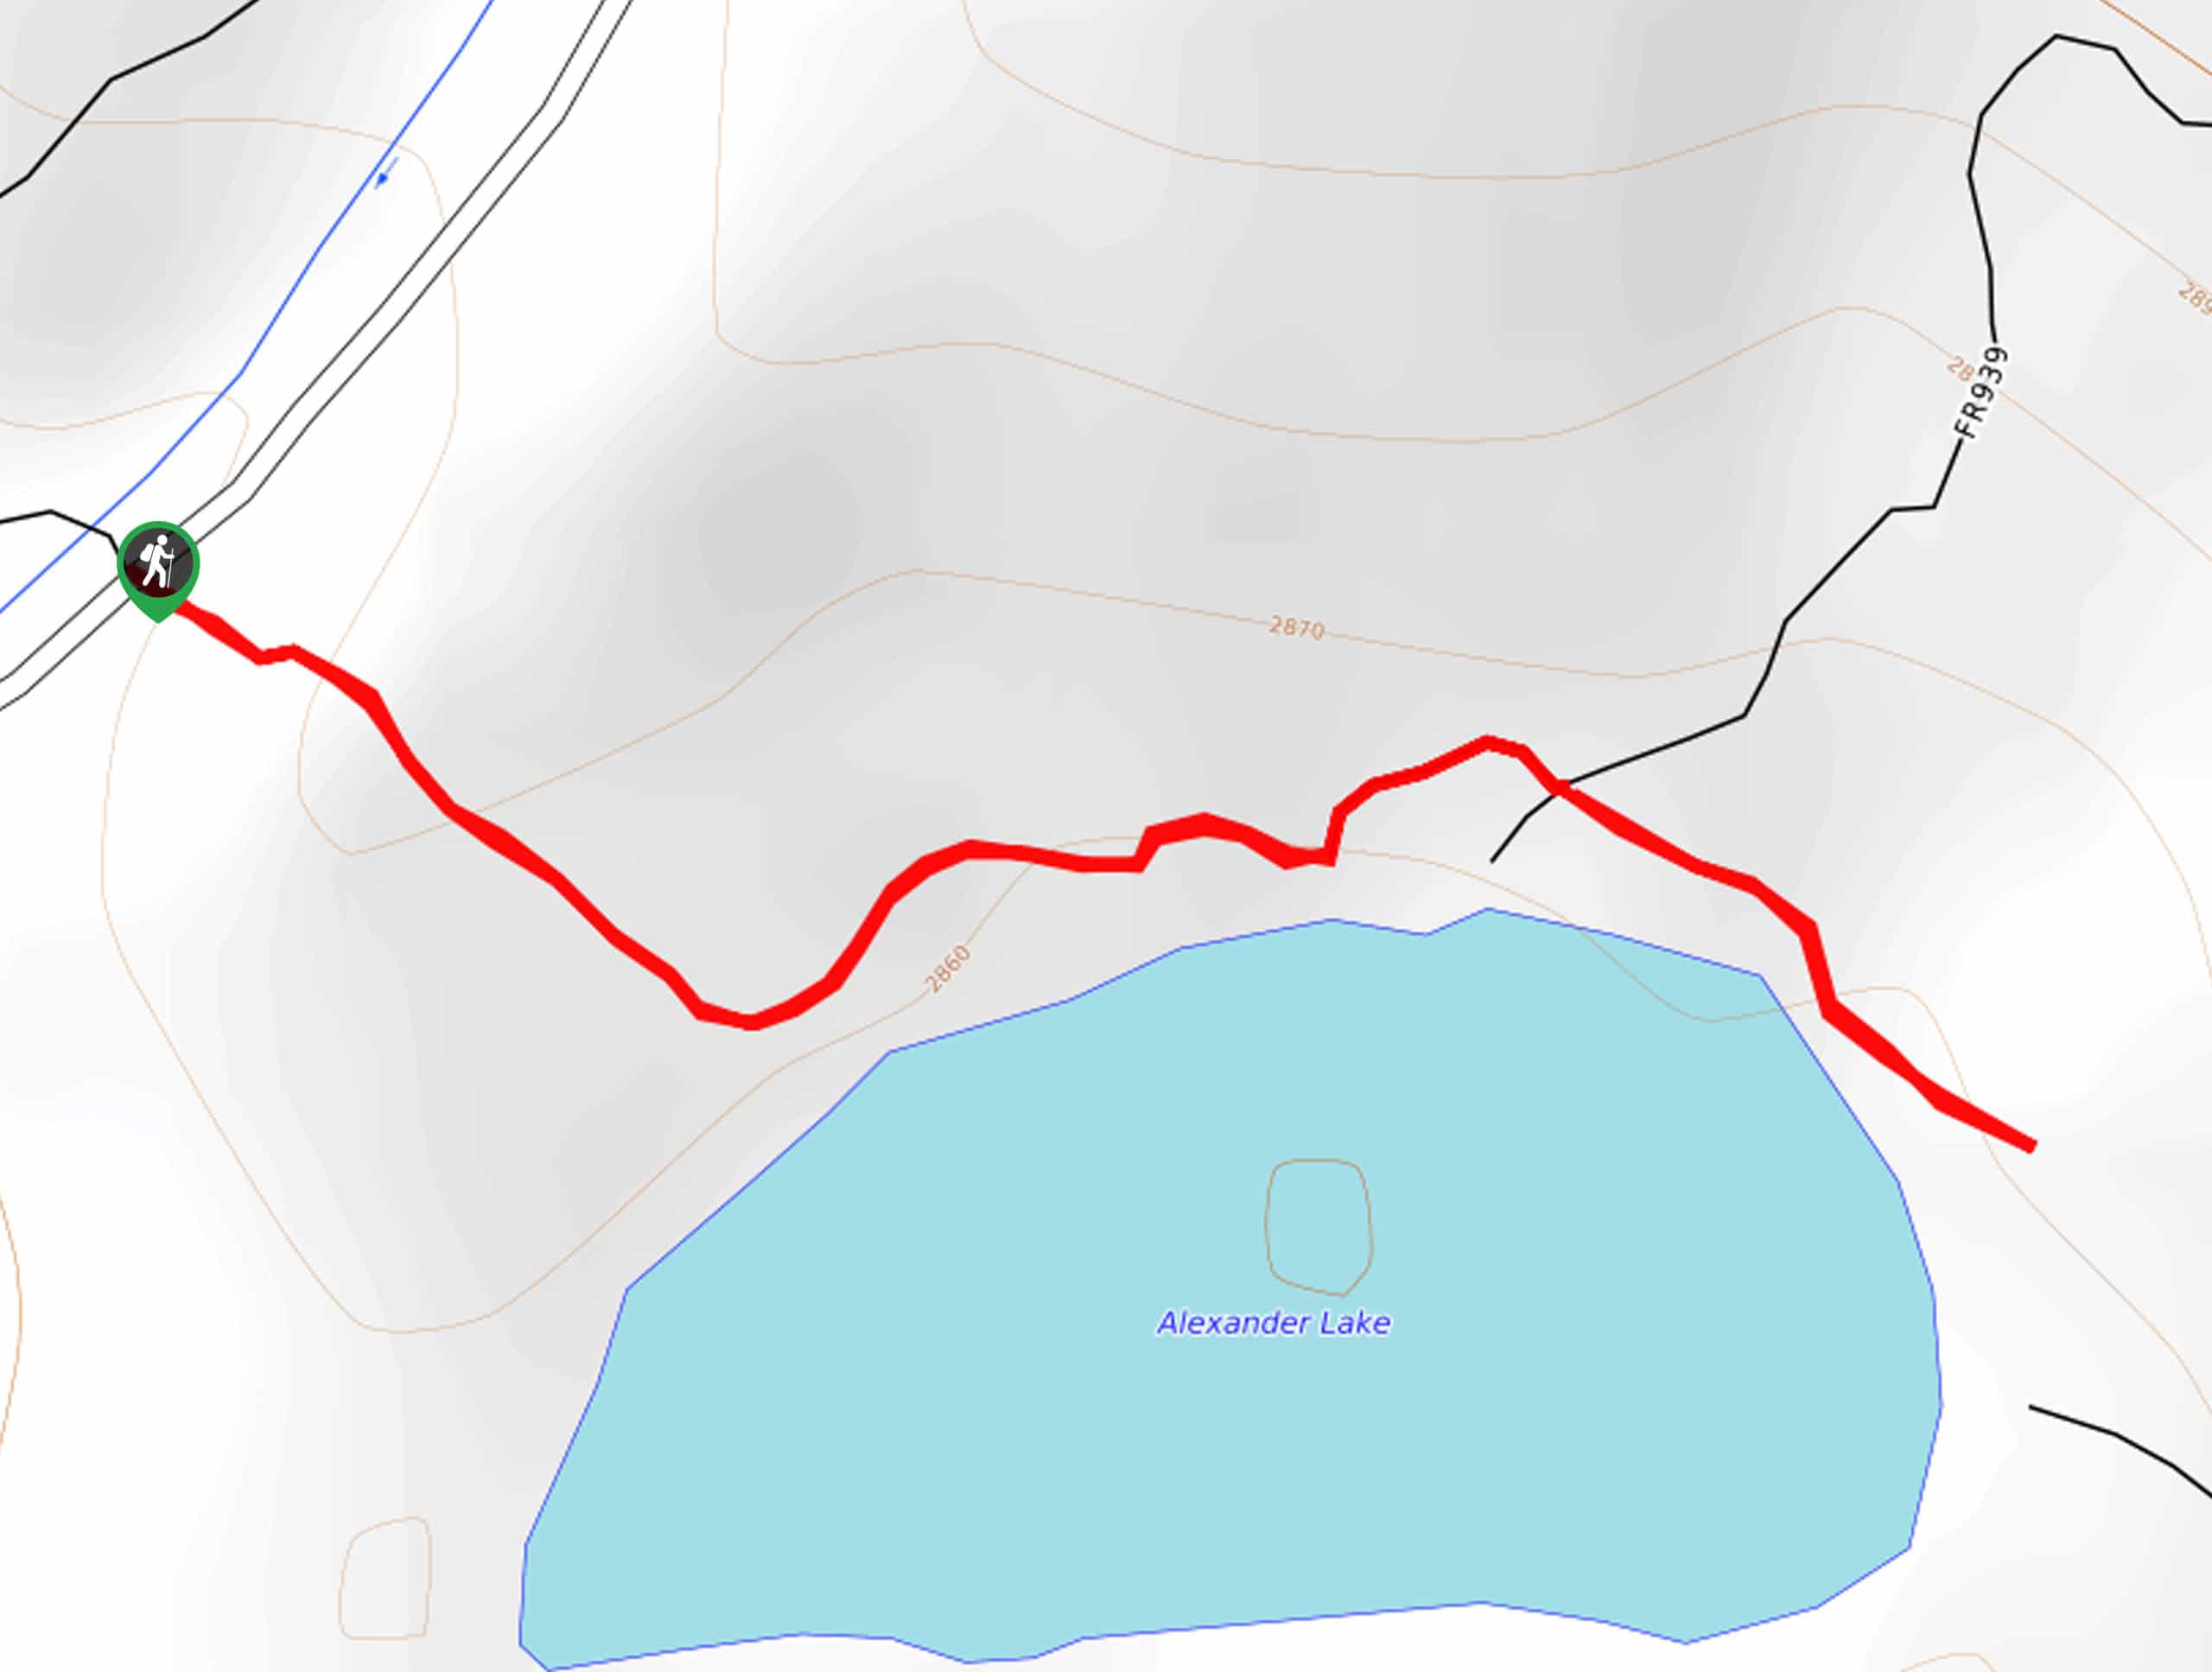 Alexander Lake Trail Map